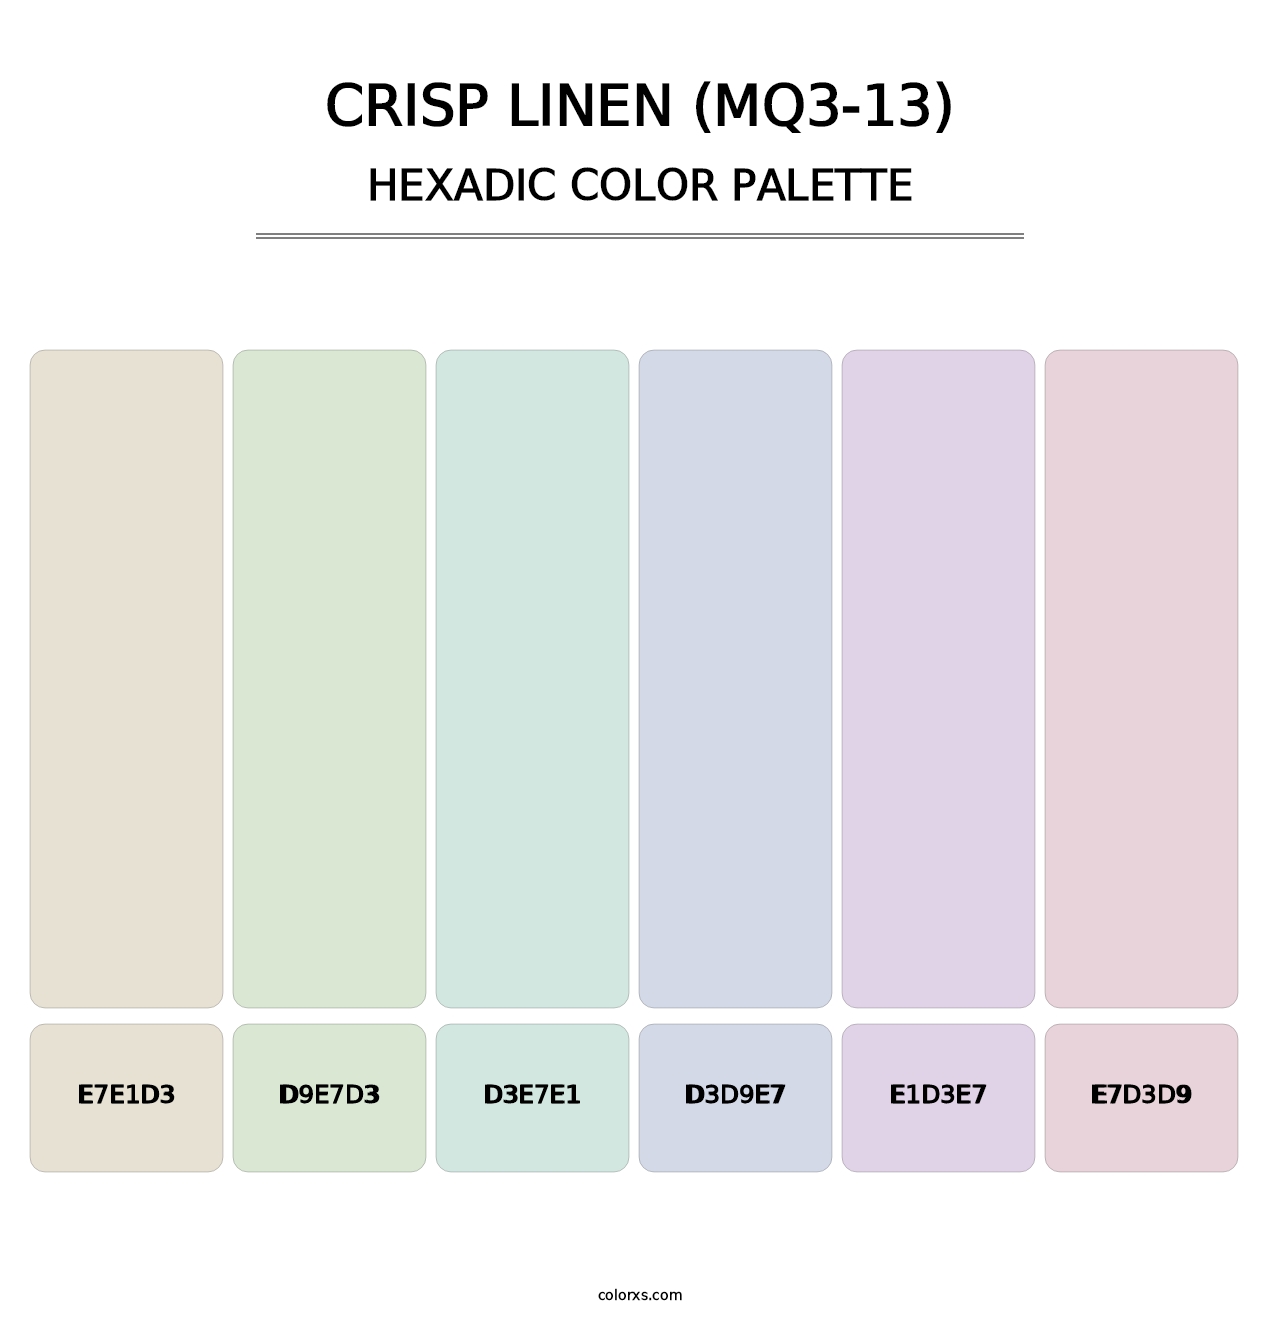 Crisp Linen (MQ3-13) - Hexadic Color Palette